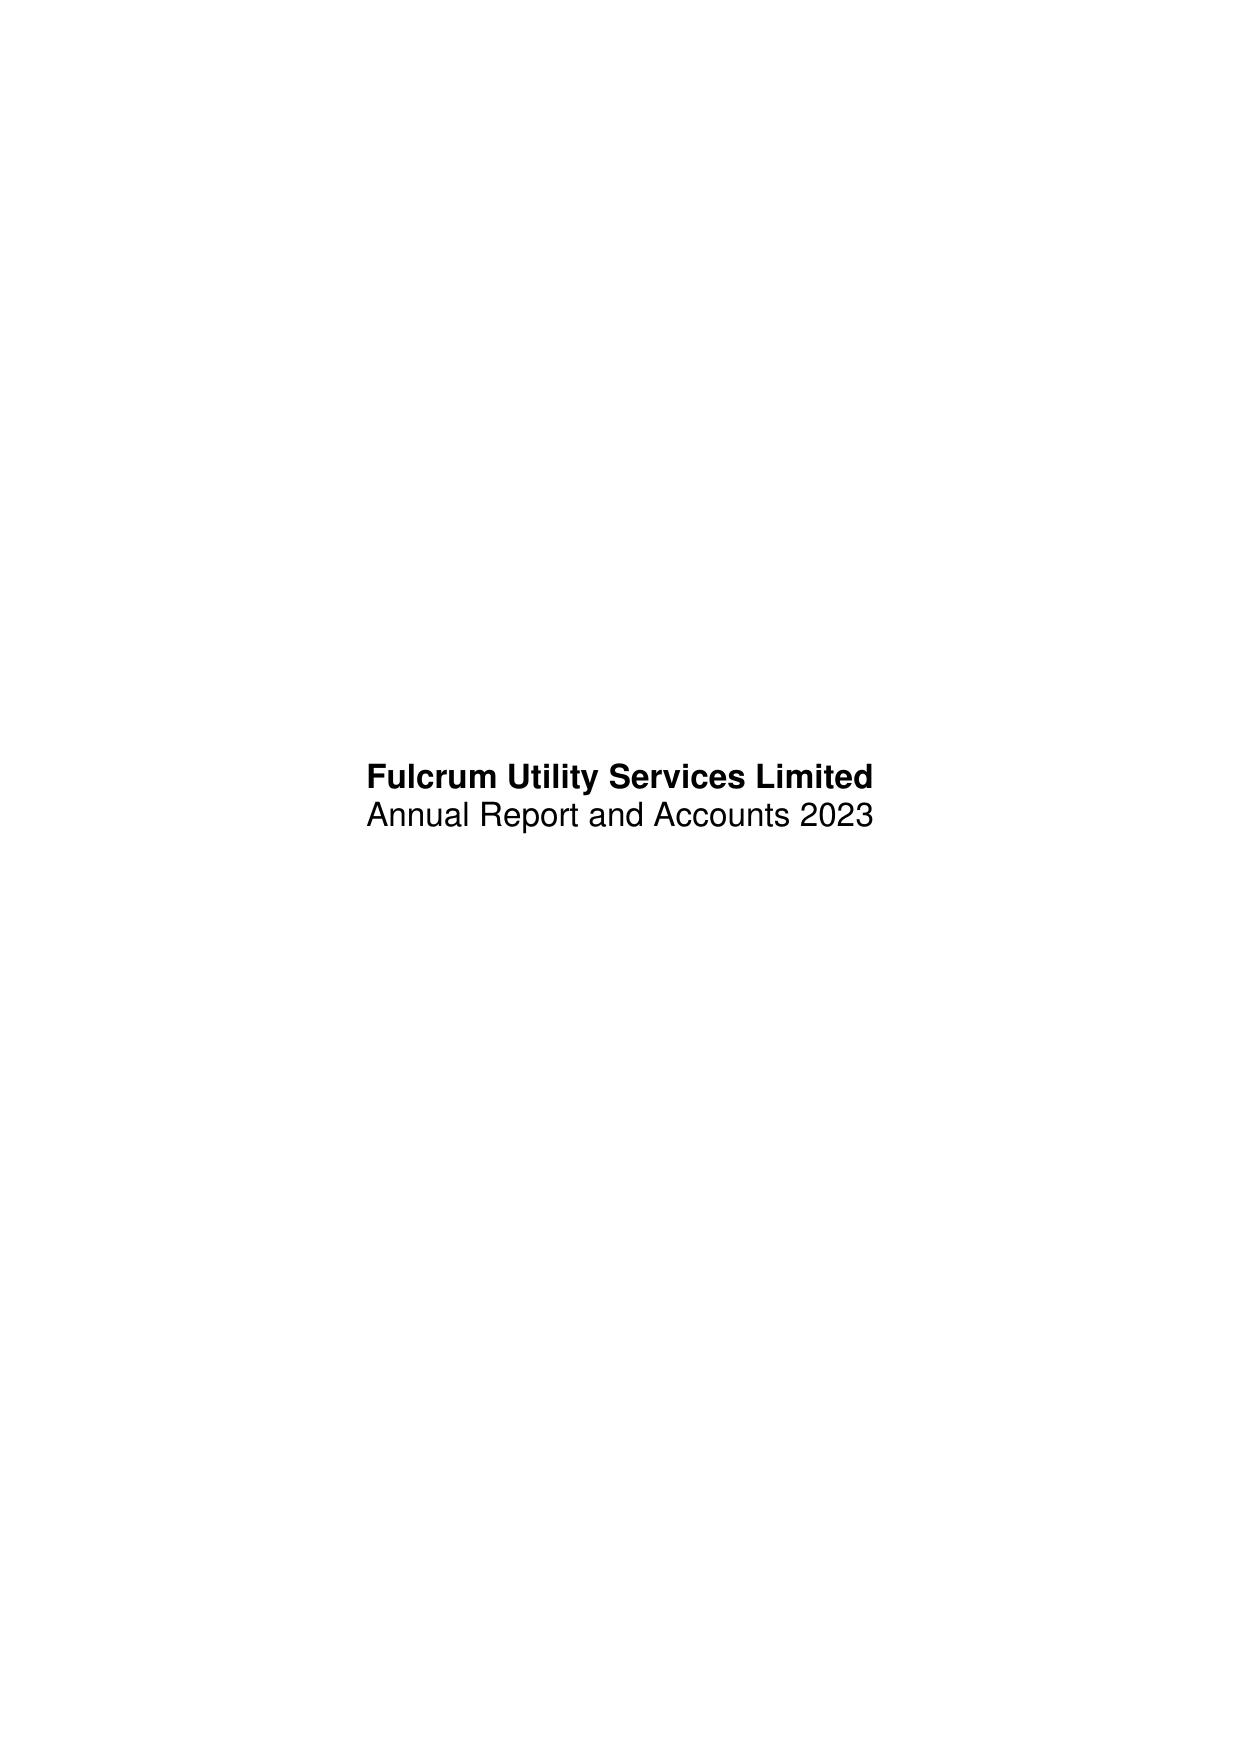 FULCRUM 2023 Annual Report